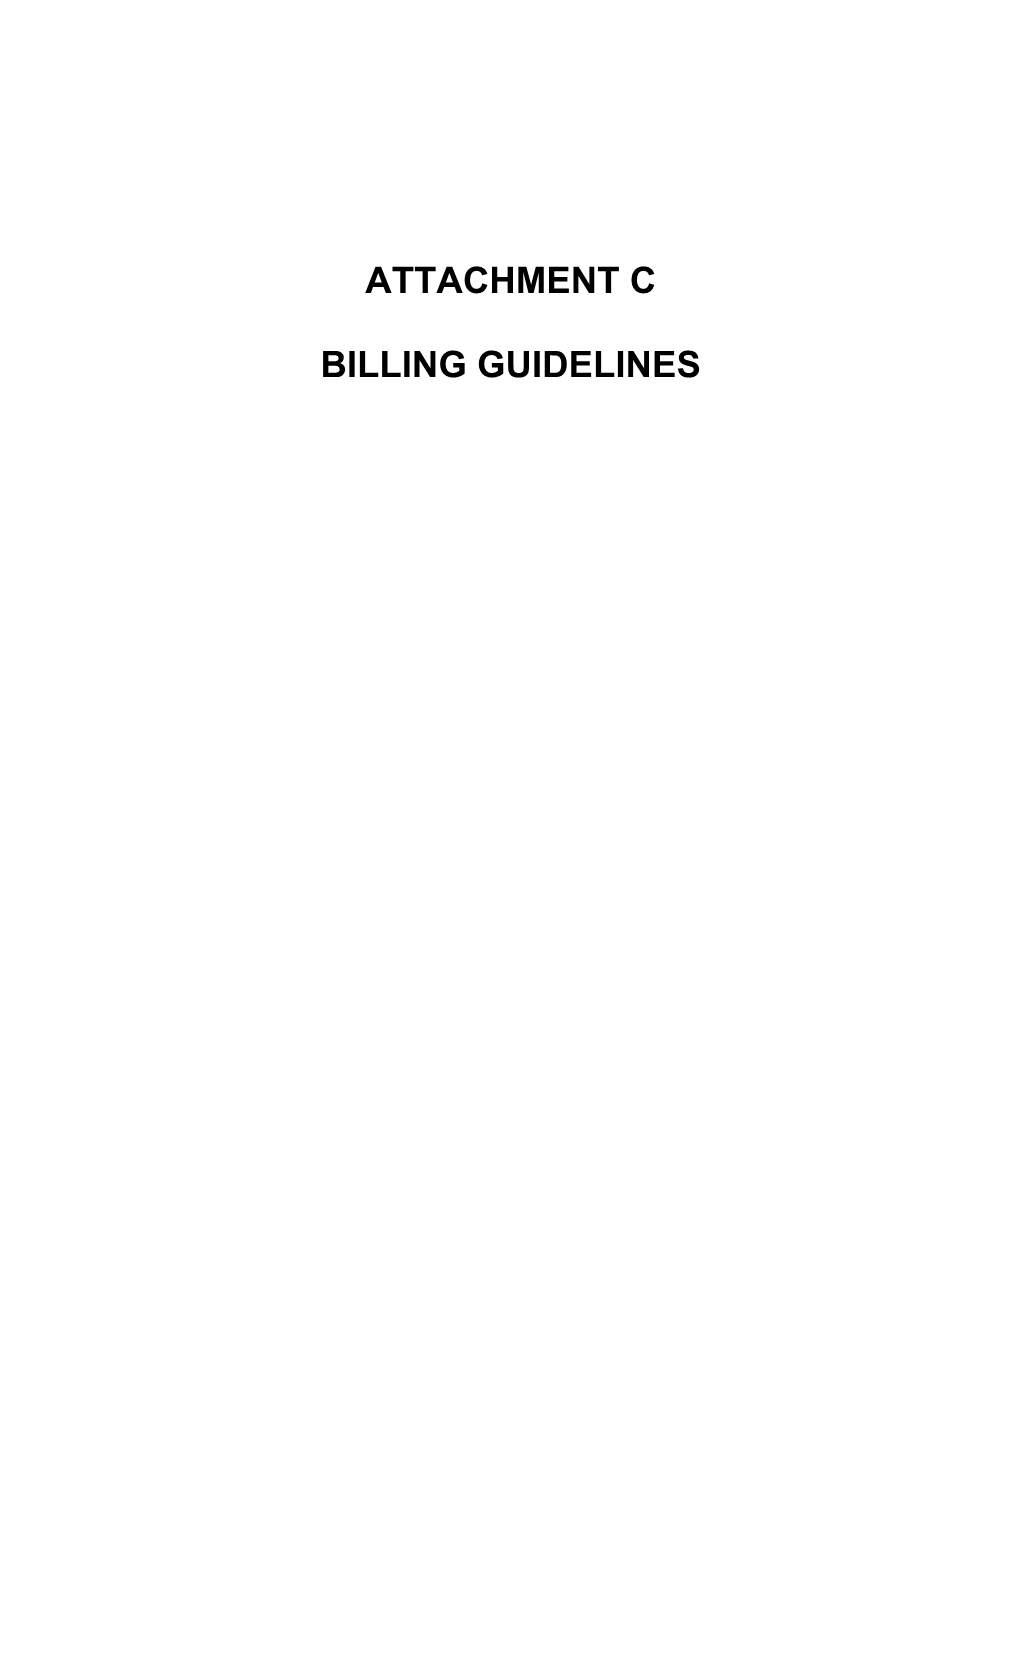 Billing Guidelines